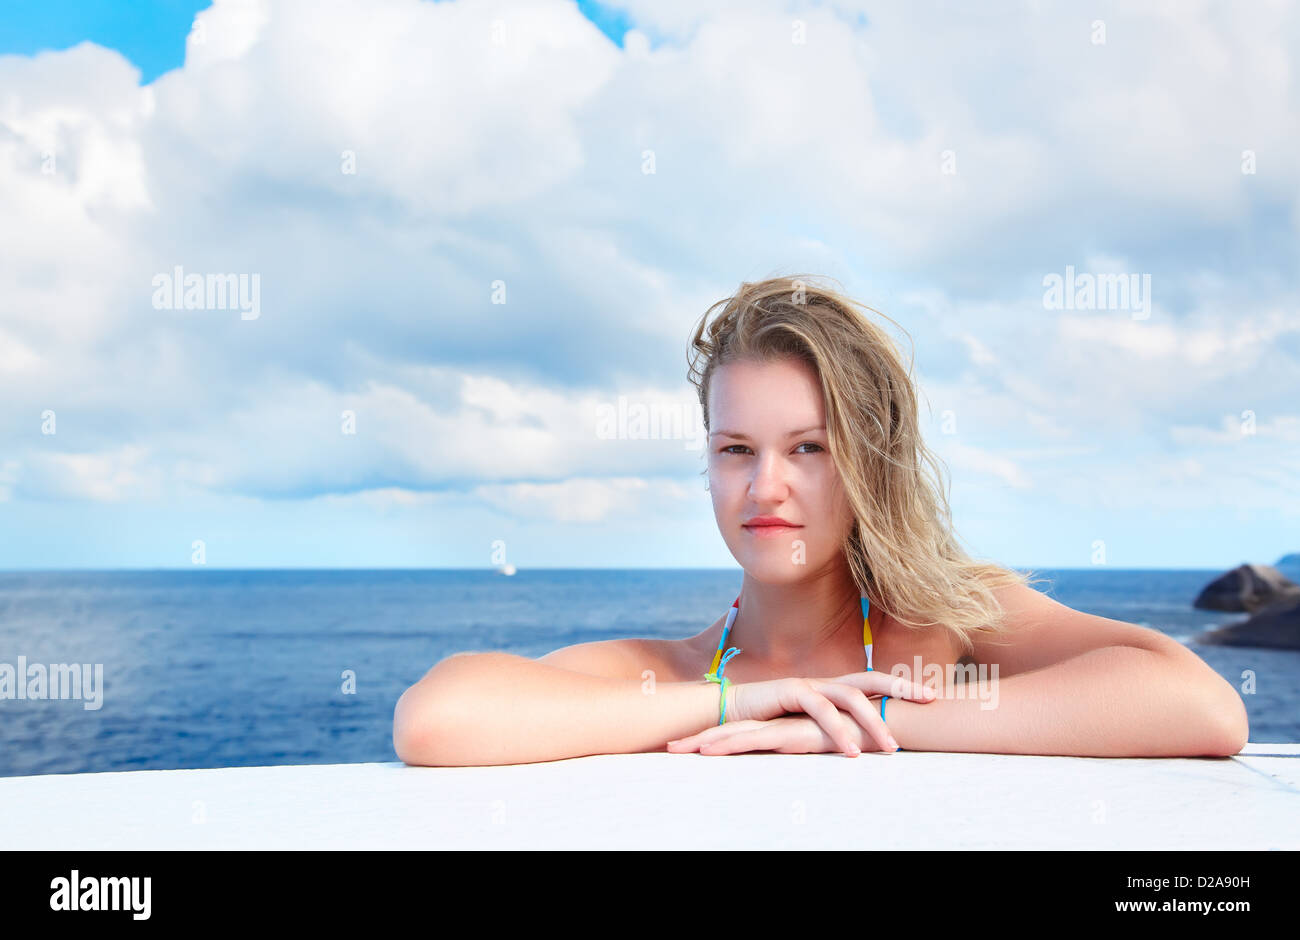 Outdoor Ritratto di giovane e bella donna bionda all'esterno. azzurro mare e cielo nuvoloso sullo sfondo Foto Stock